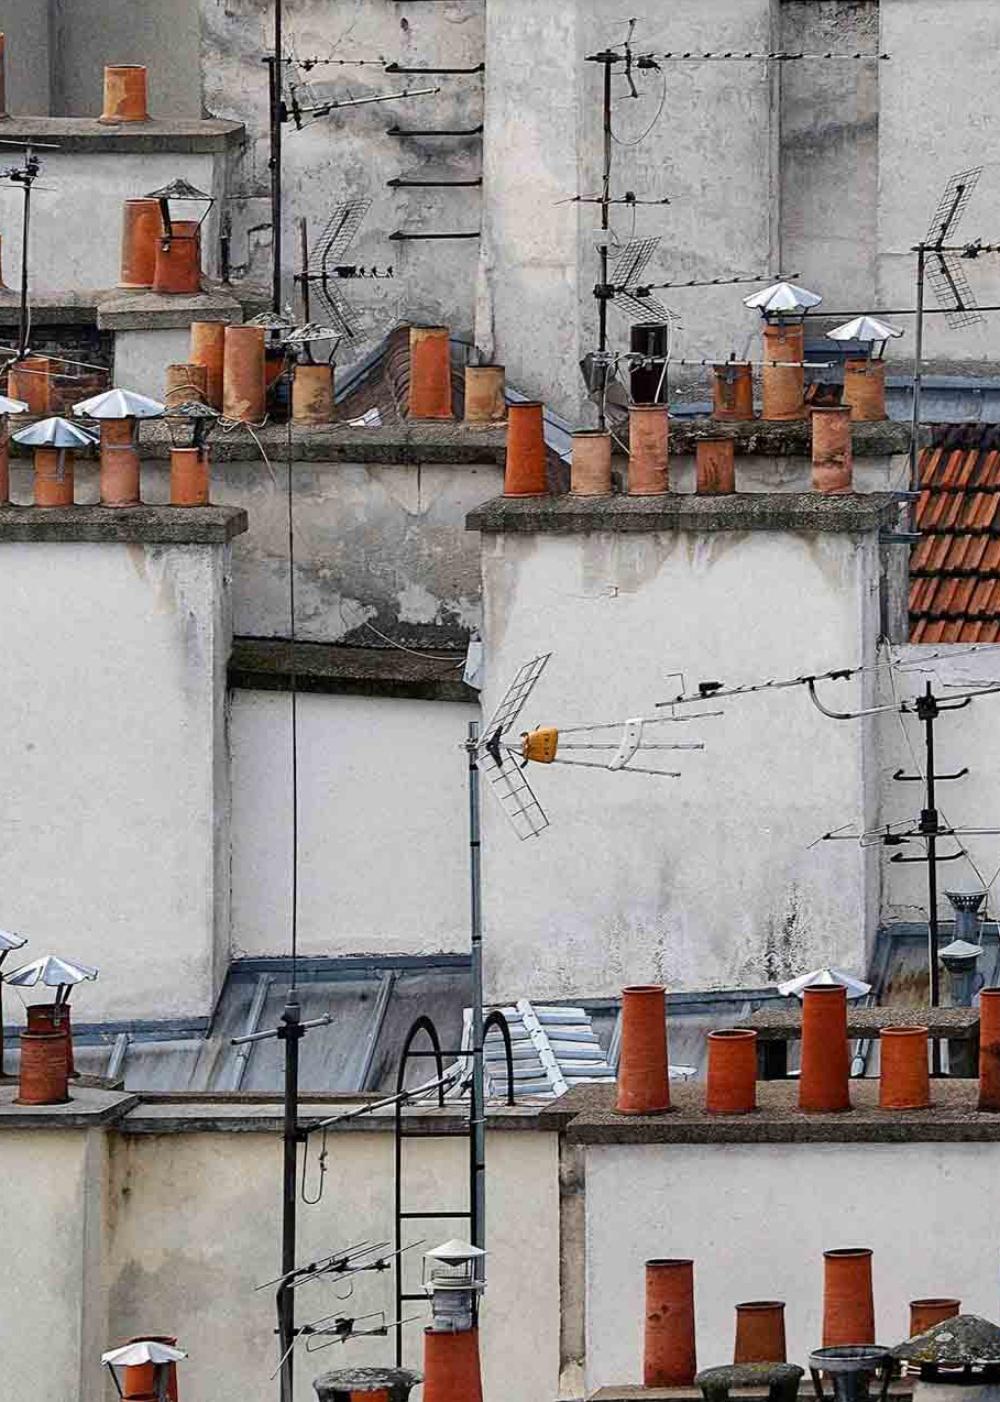 paris roof tops 6 – Michael Wolf, City, Colour, Paris, Photography, Chimneys For Sale 2